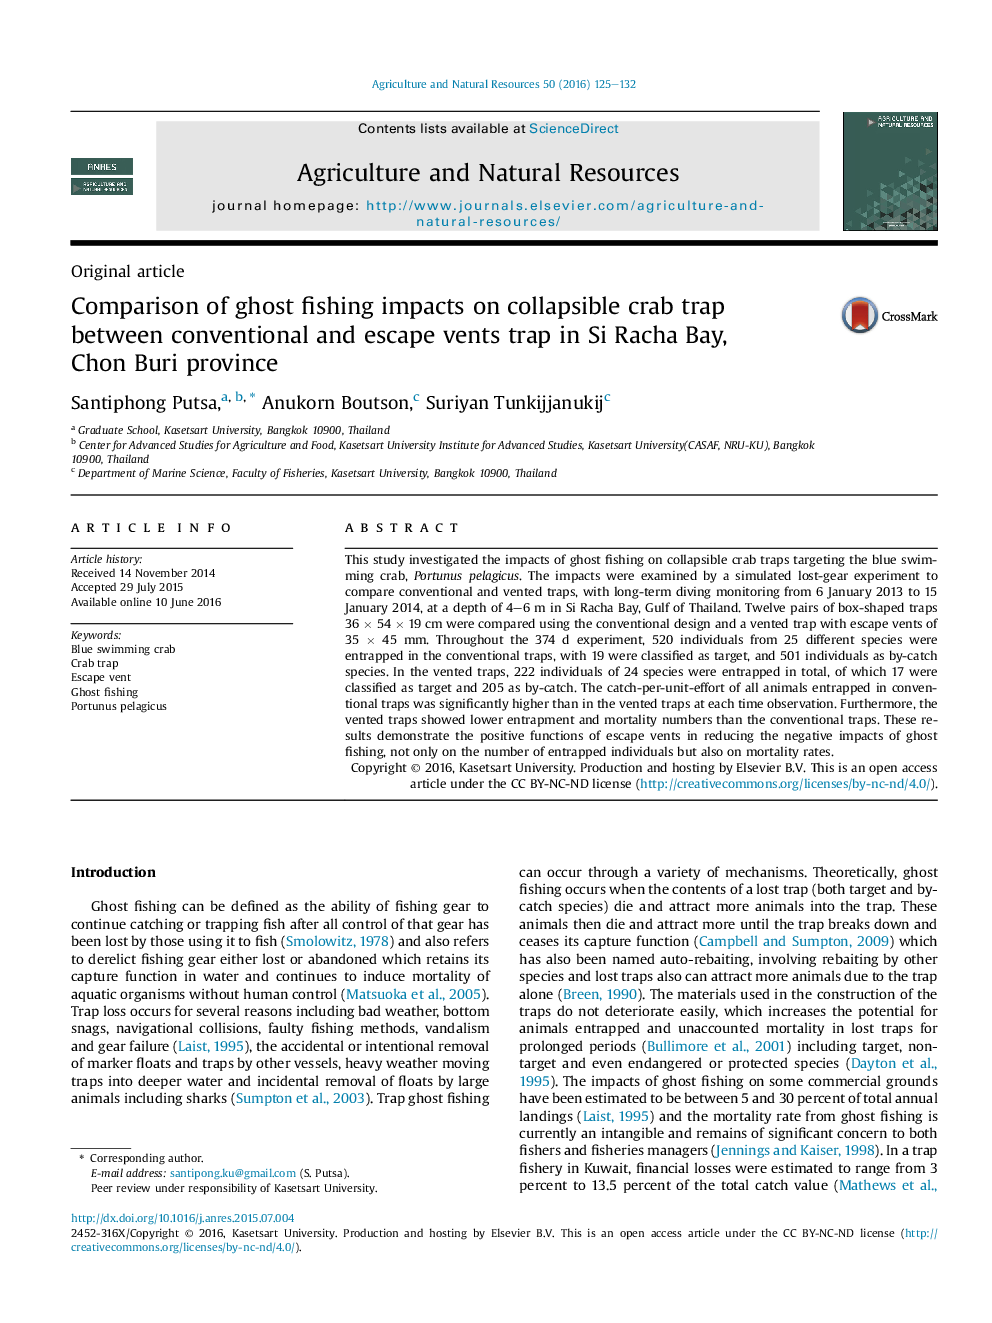 مقایسه اثرات ماهیگیری شبح بر دام خرچنگ تاشو بین متعارف و فرار از تله در Si Racha خلیج، استان چونبوری